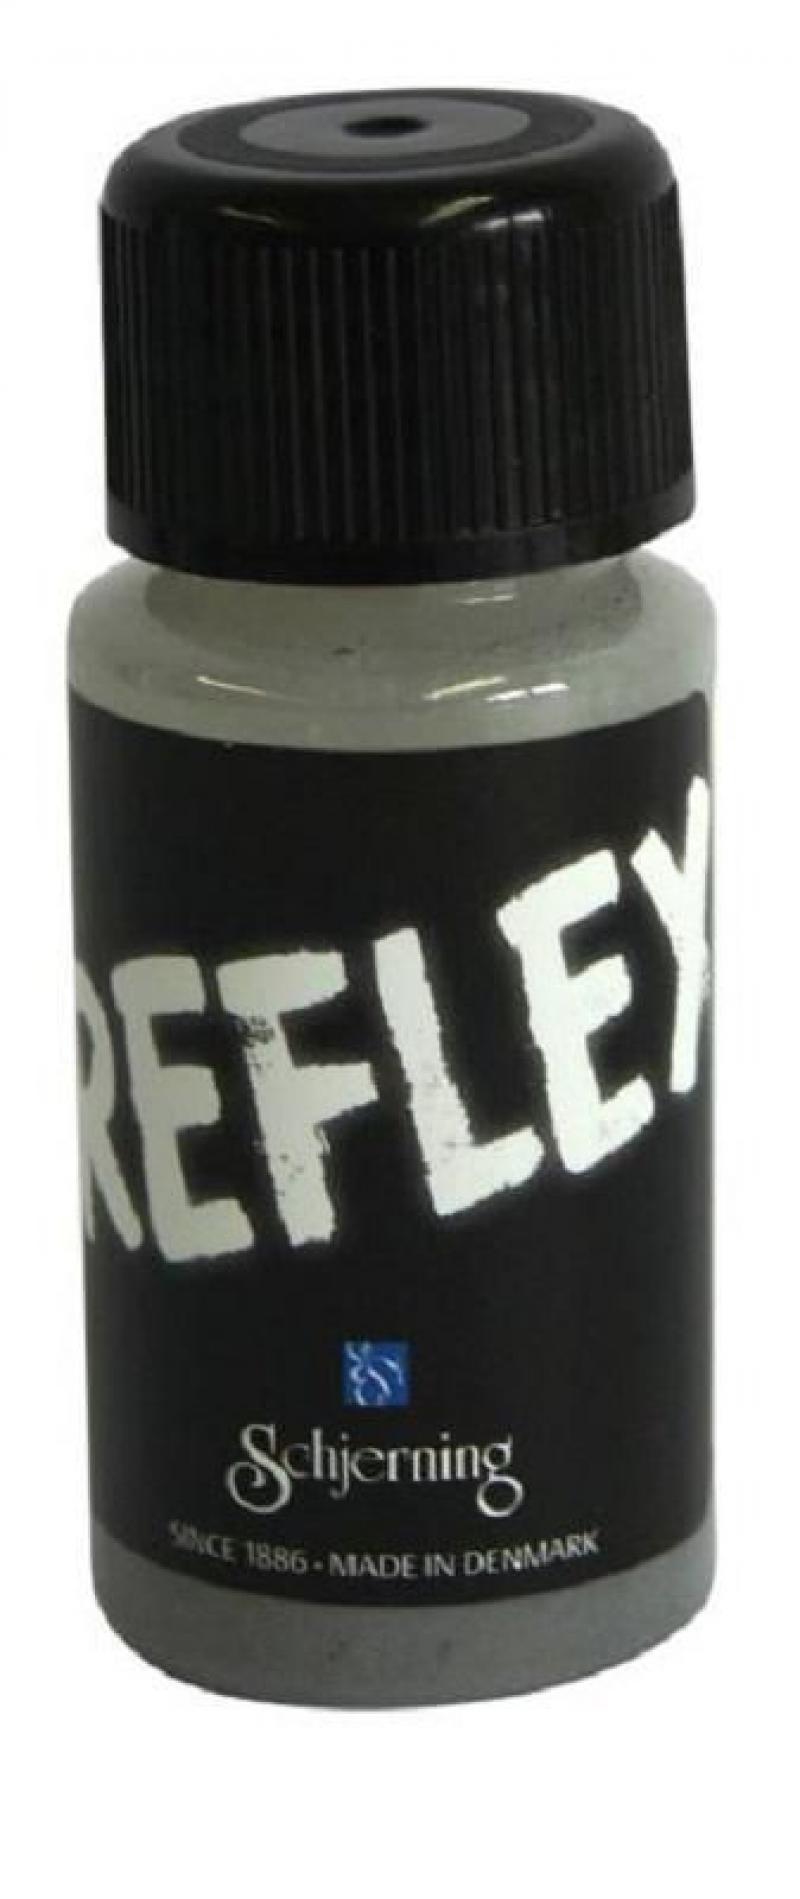 Schjerning Reflex-Farbe